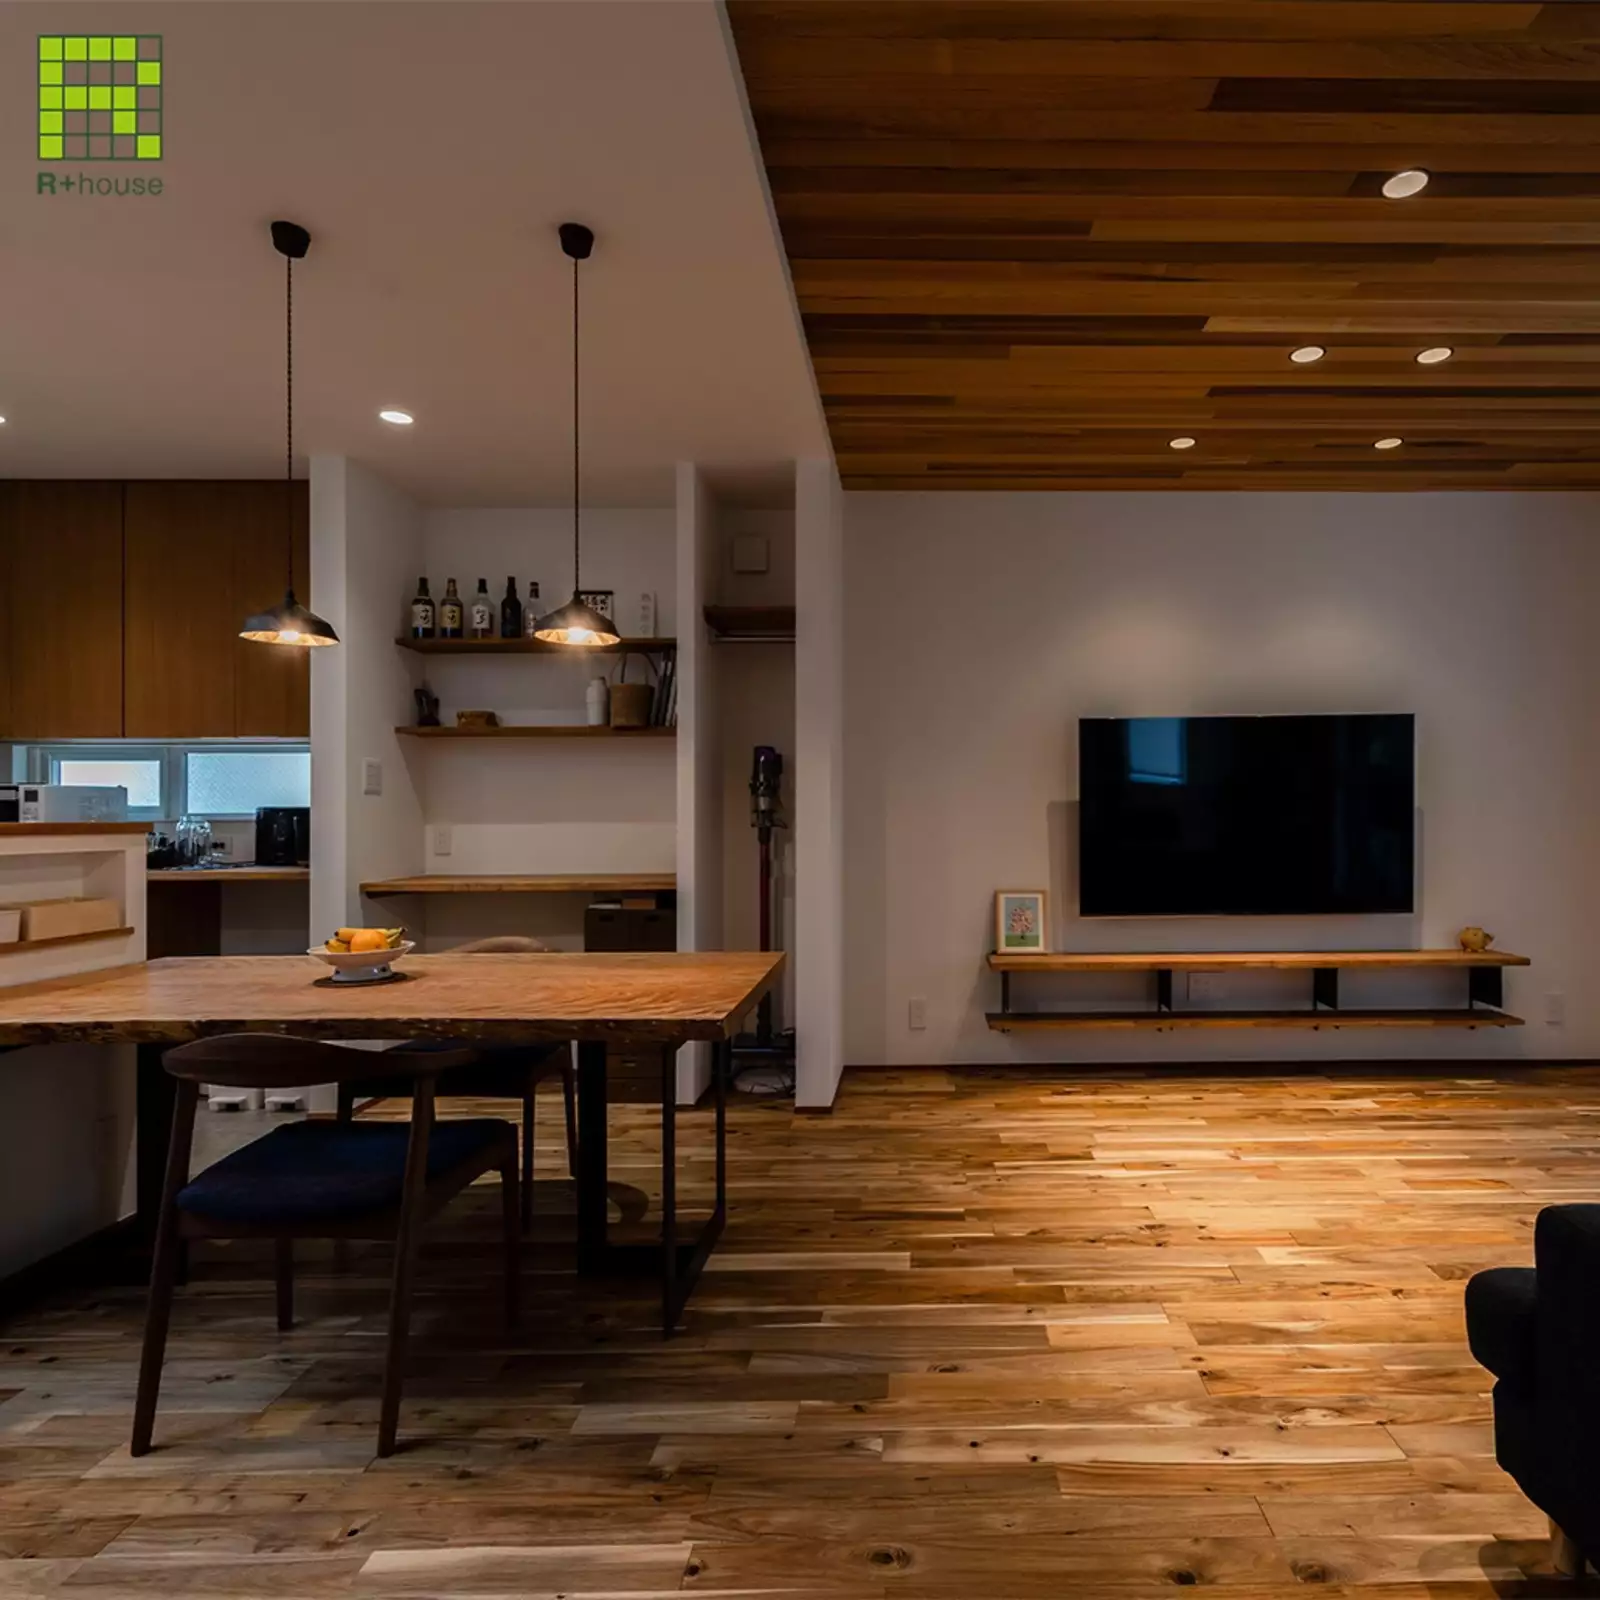 R+houseの物件のリビングダイニングの写真です。左側にはキッチン、ダイニングテーブル。右側に木目の床が印象的なリビング。